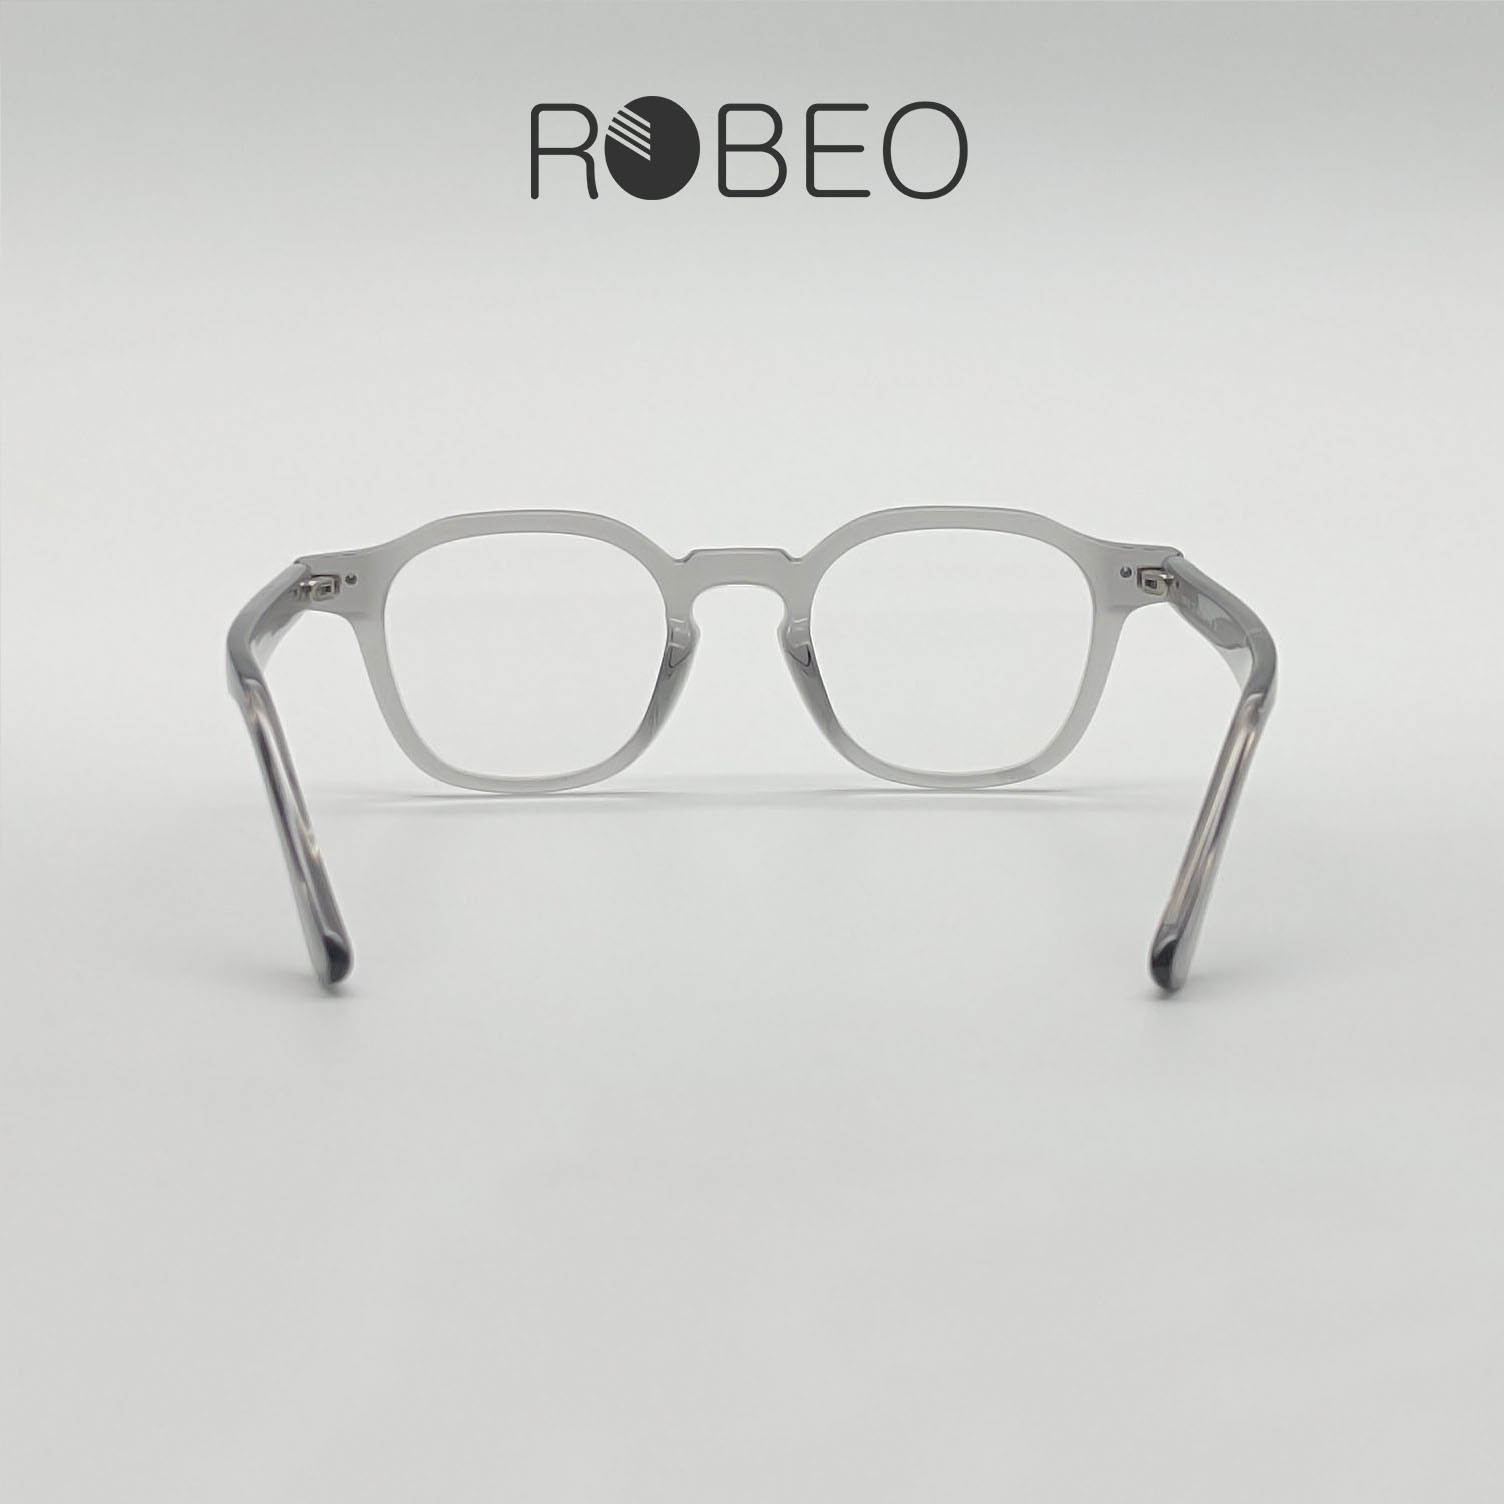 Gọng kính cận nam nữ ROBEO , gọng vuông đa giác mắt chống ánh sáng xanh - Fullbox